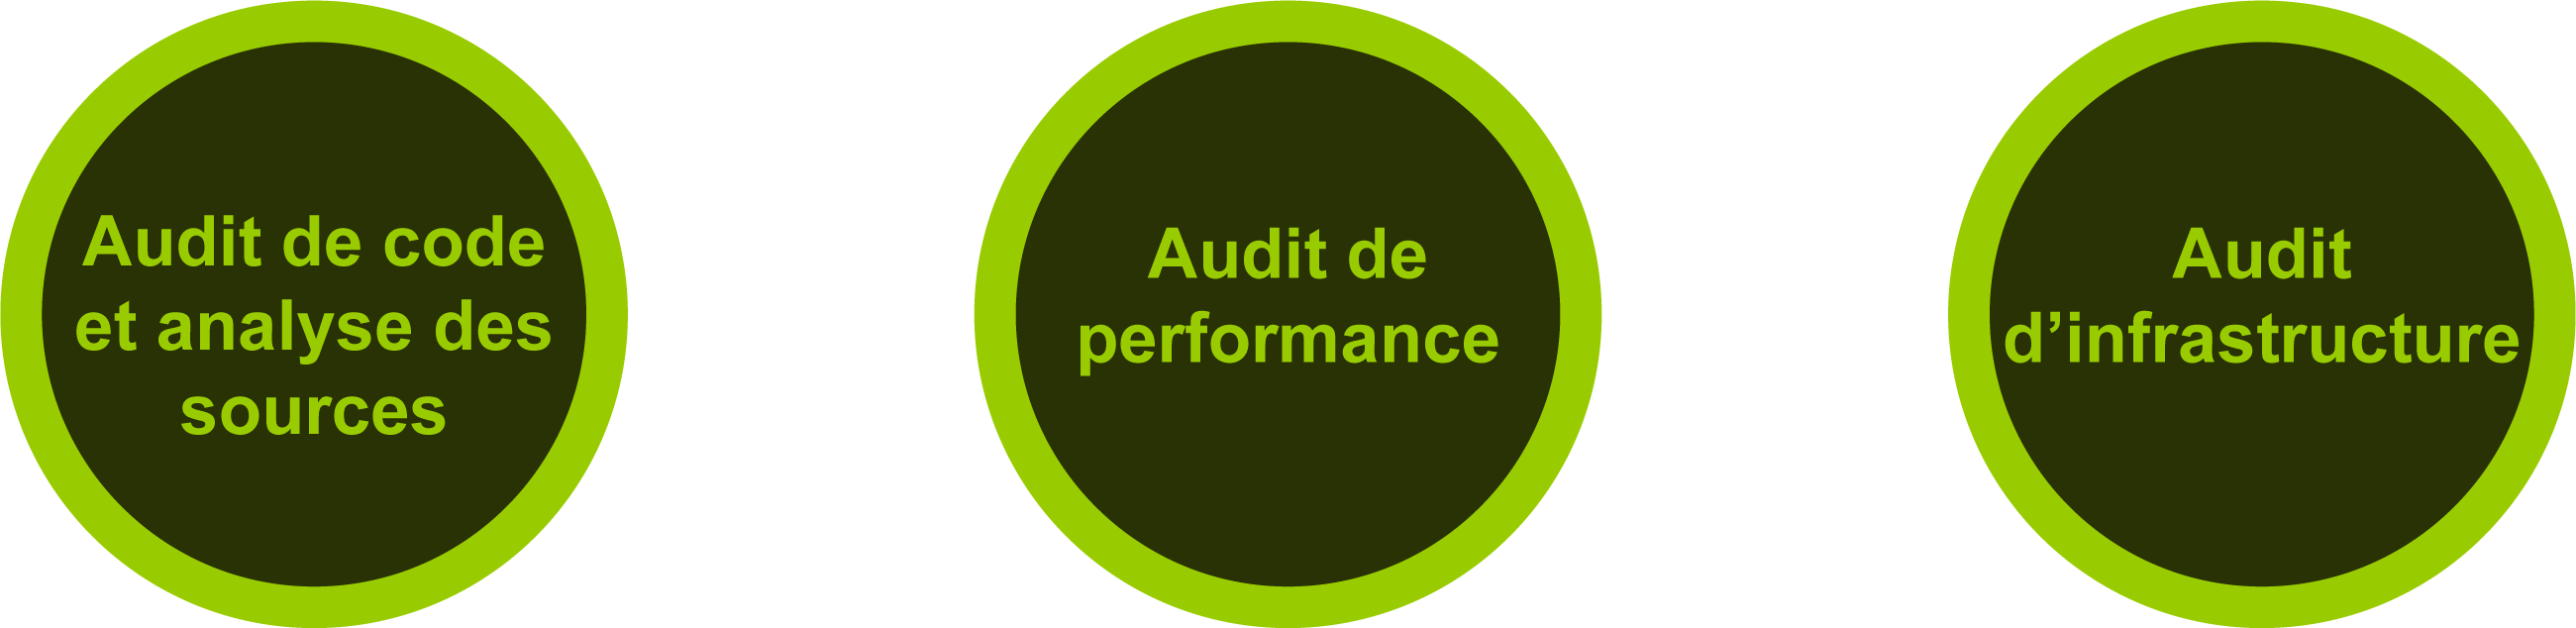 audit-securite-prestation-performance